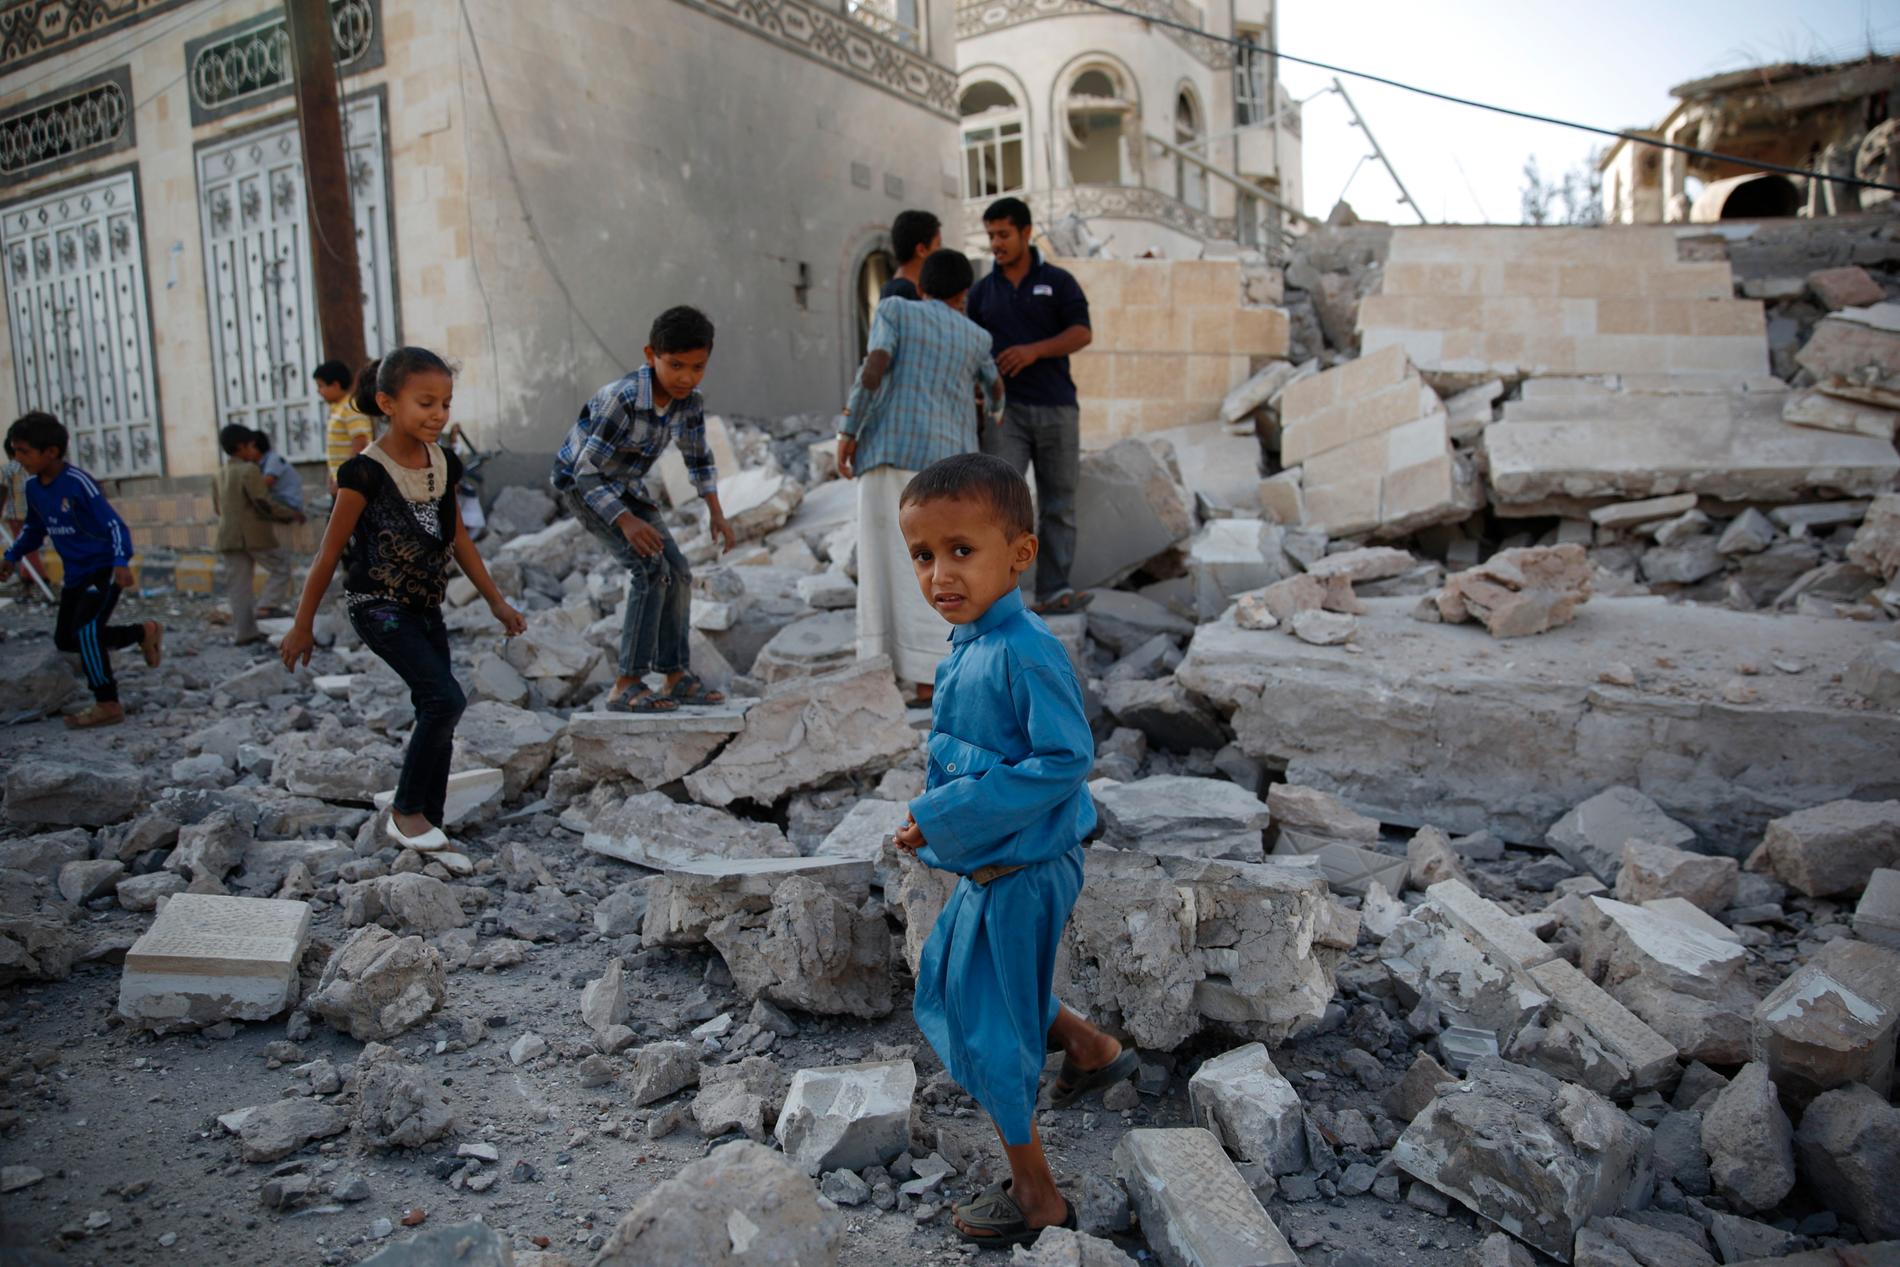 Barnen leker i spillrorna av ett söndersprängt hus i Sanaa, Jemen.  